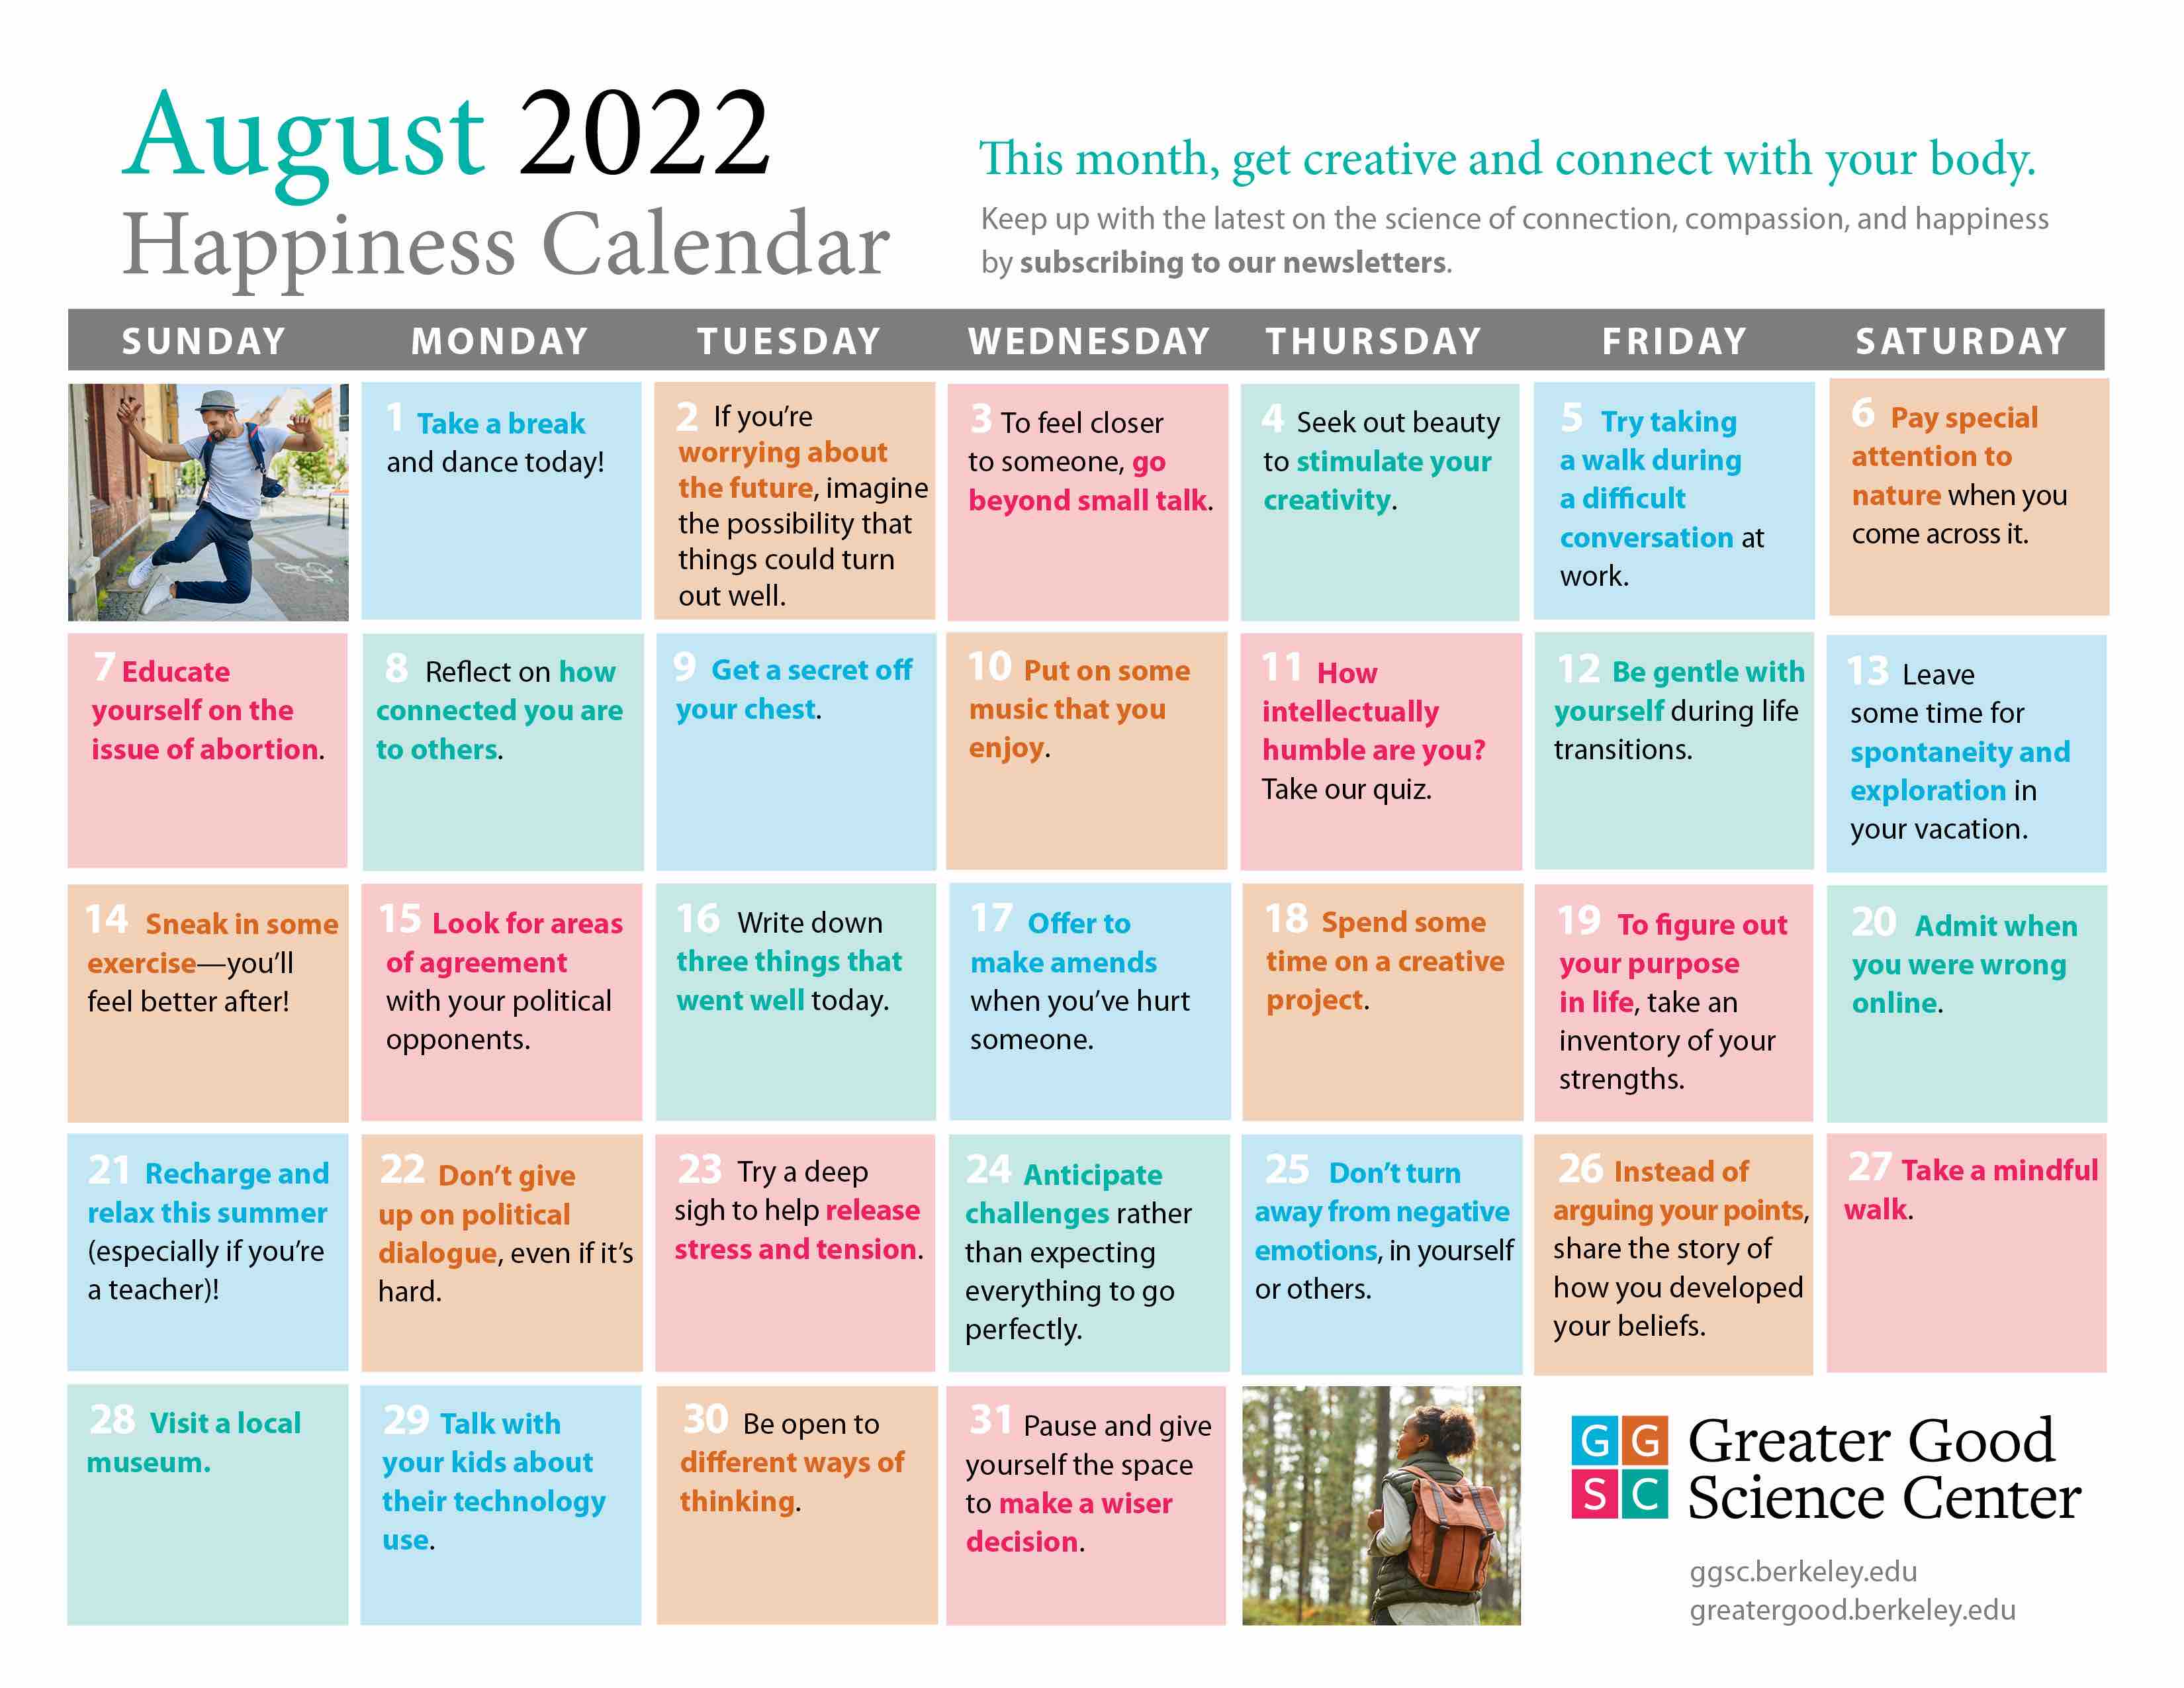 August 2022 happiness calendar